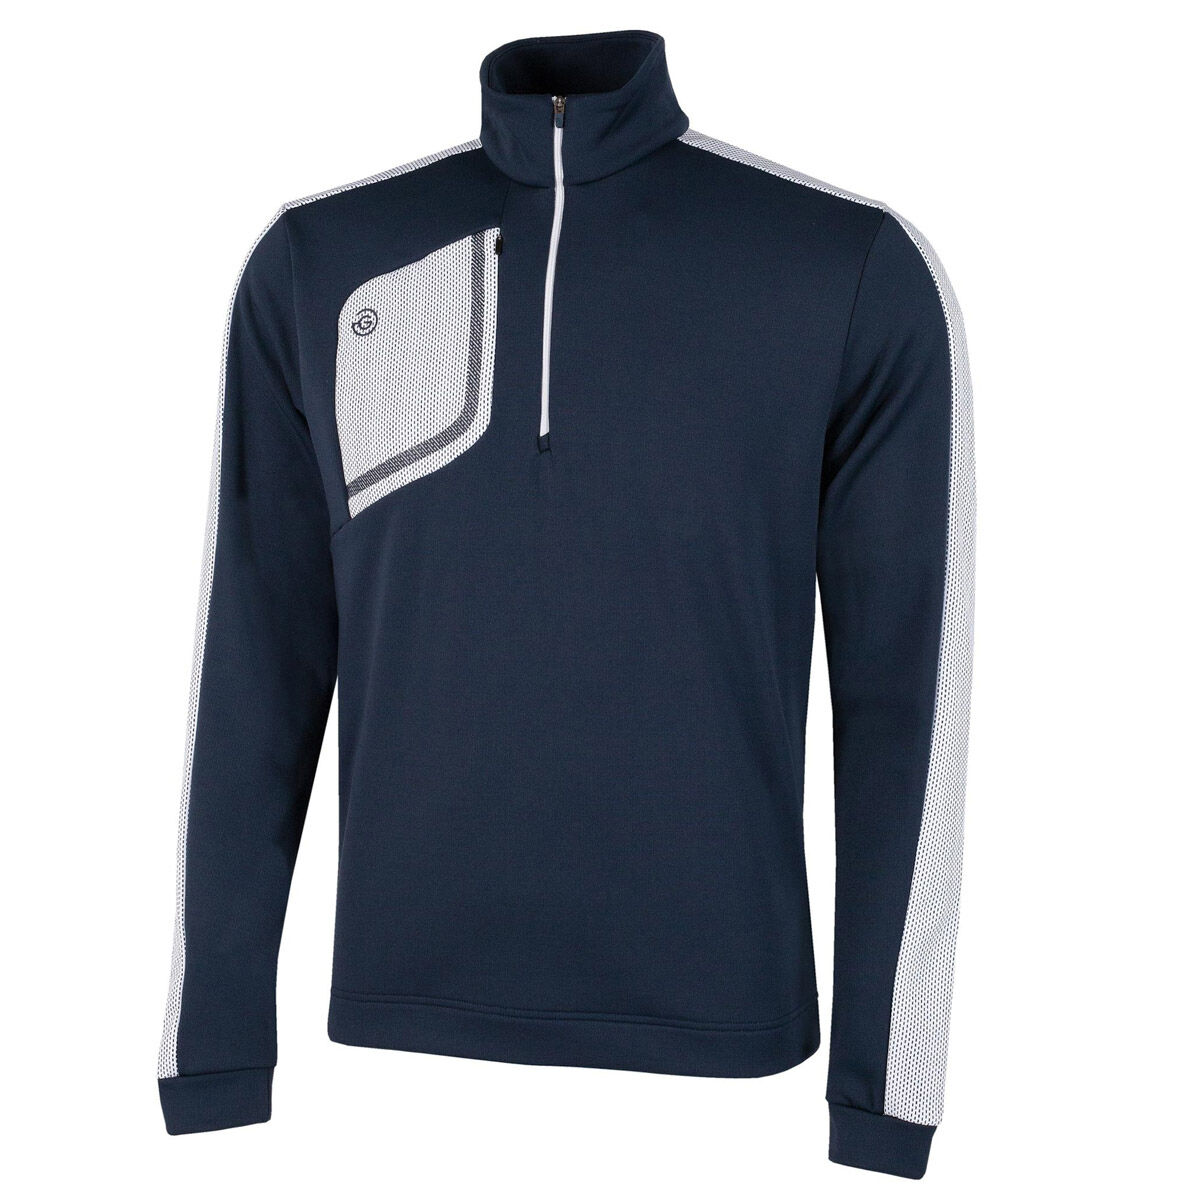 Vêtement intermédiaire Dwight Insula Galvin Green, homme, Navy/bluebell, Petit  | Online Golf